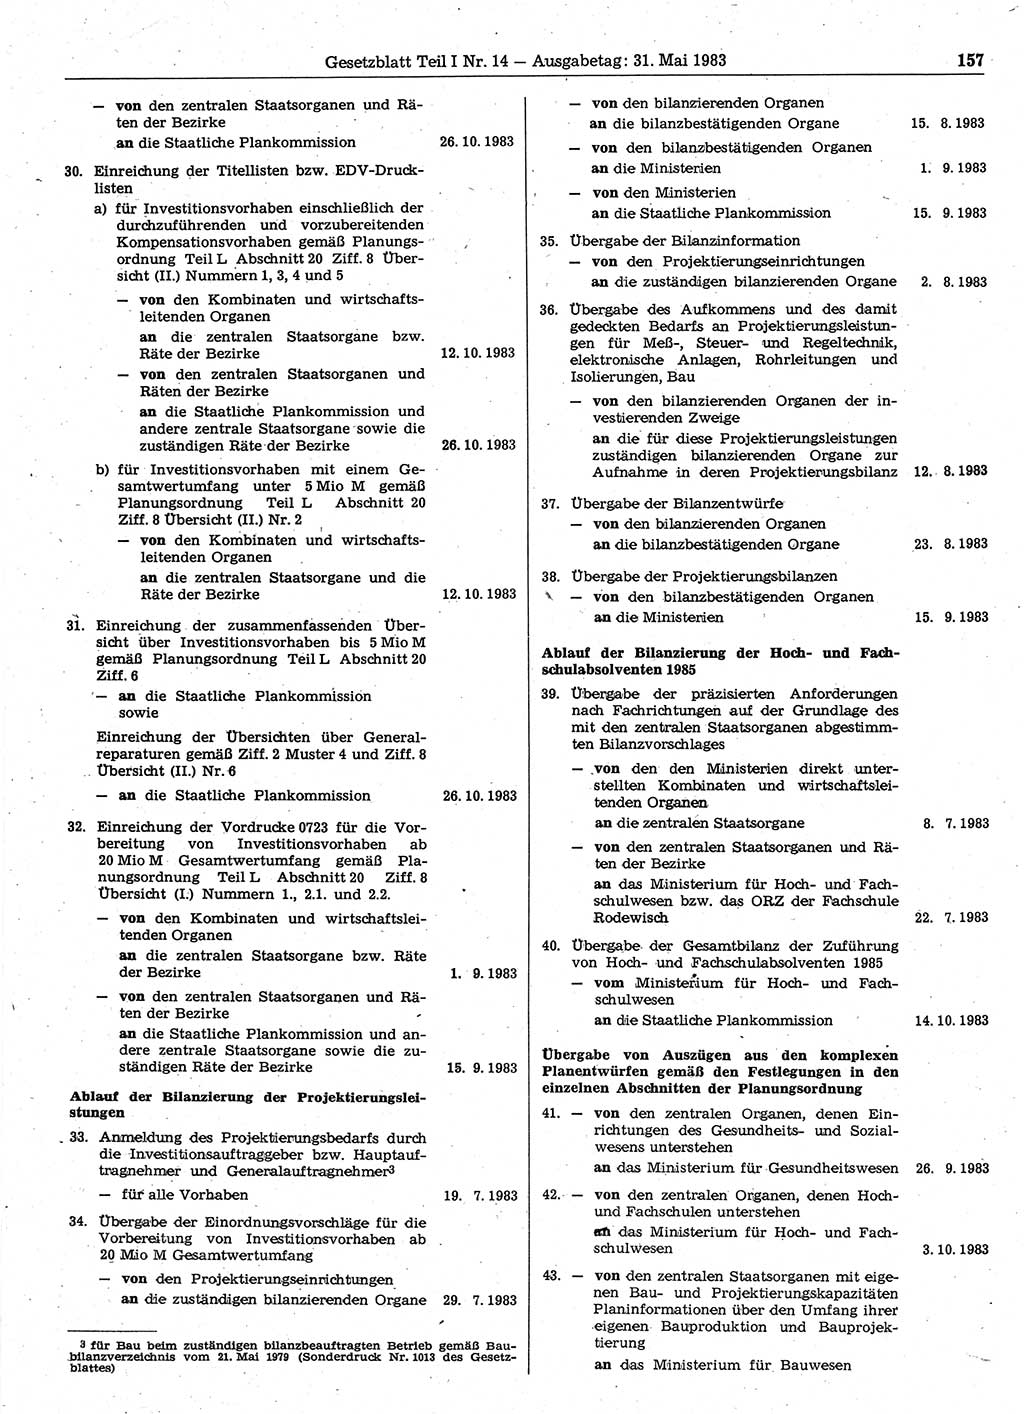 Gesetzblatt (GBl.) der Deutschen Demokratischen Republik (DDR) Teil Ⅰ 1983, Seite 157 (GBl. DDR Ⅰ 1983, S. 157)